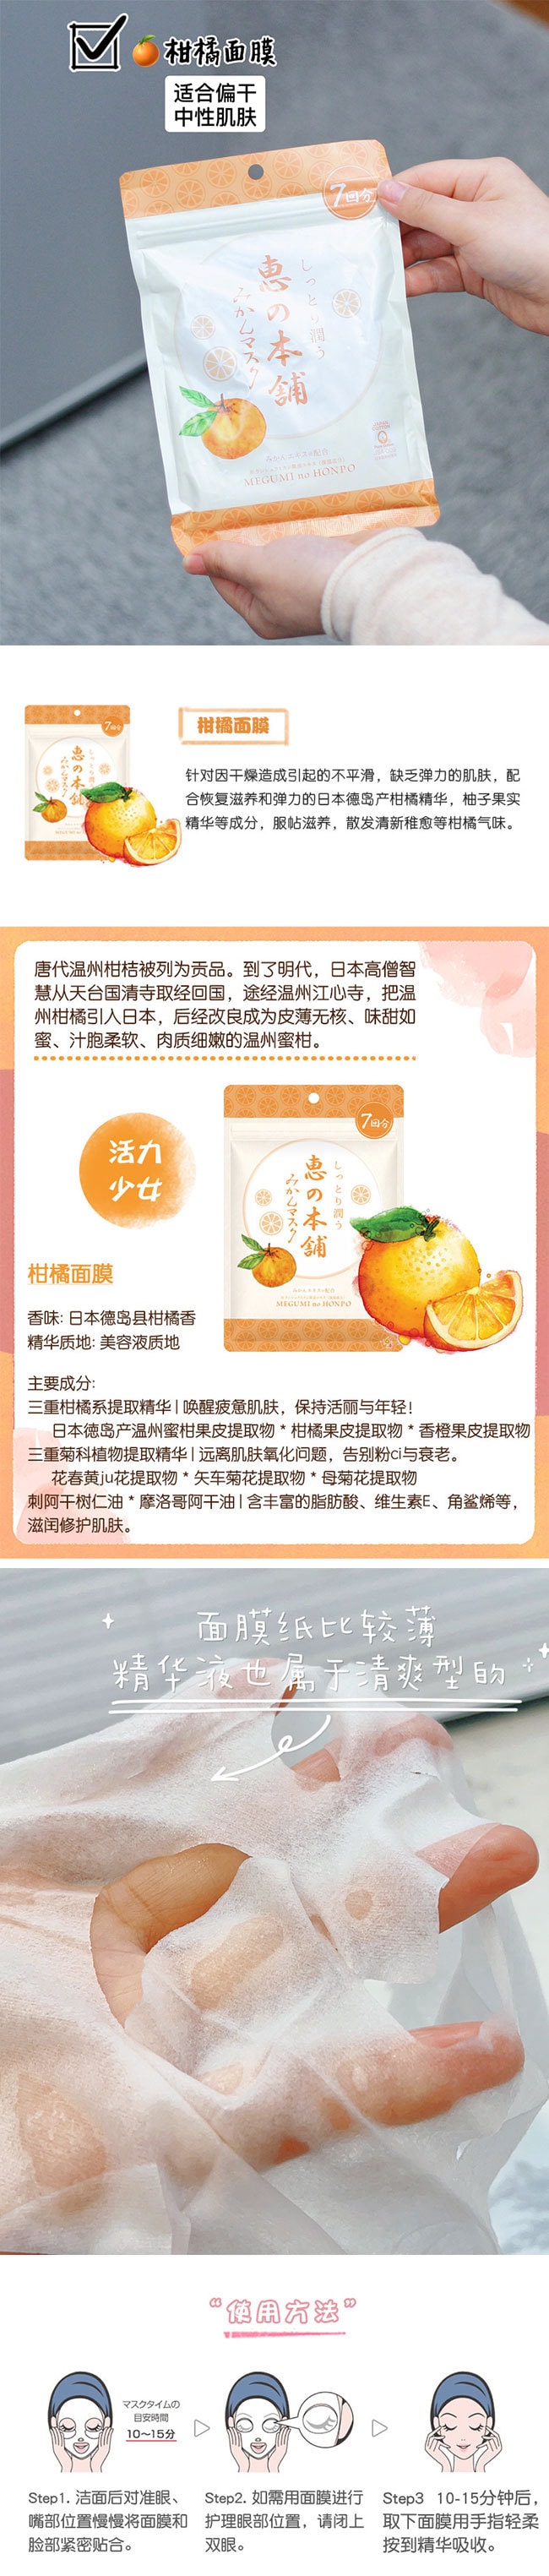 【日本直效郵件】惠之本舖 溫泉水柑橘面膜 7枚入